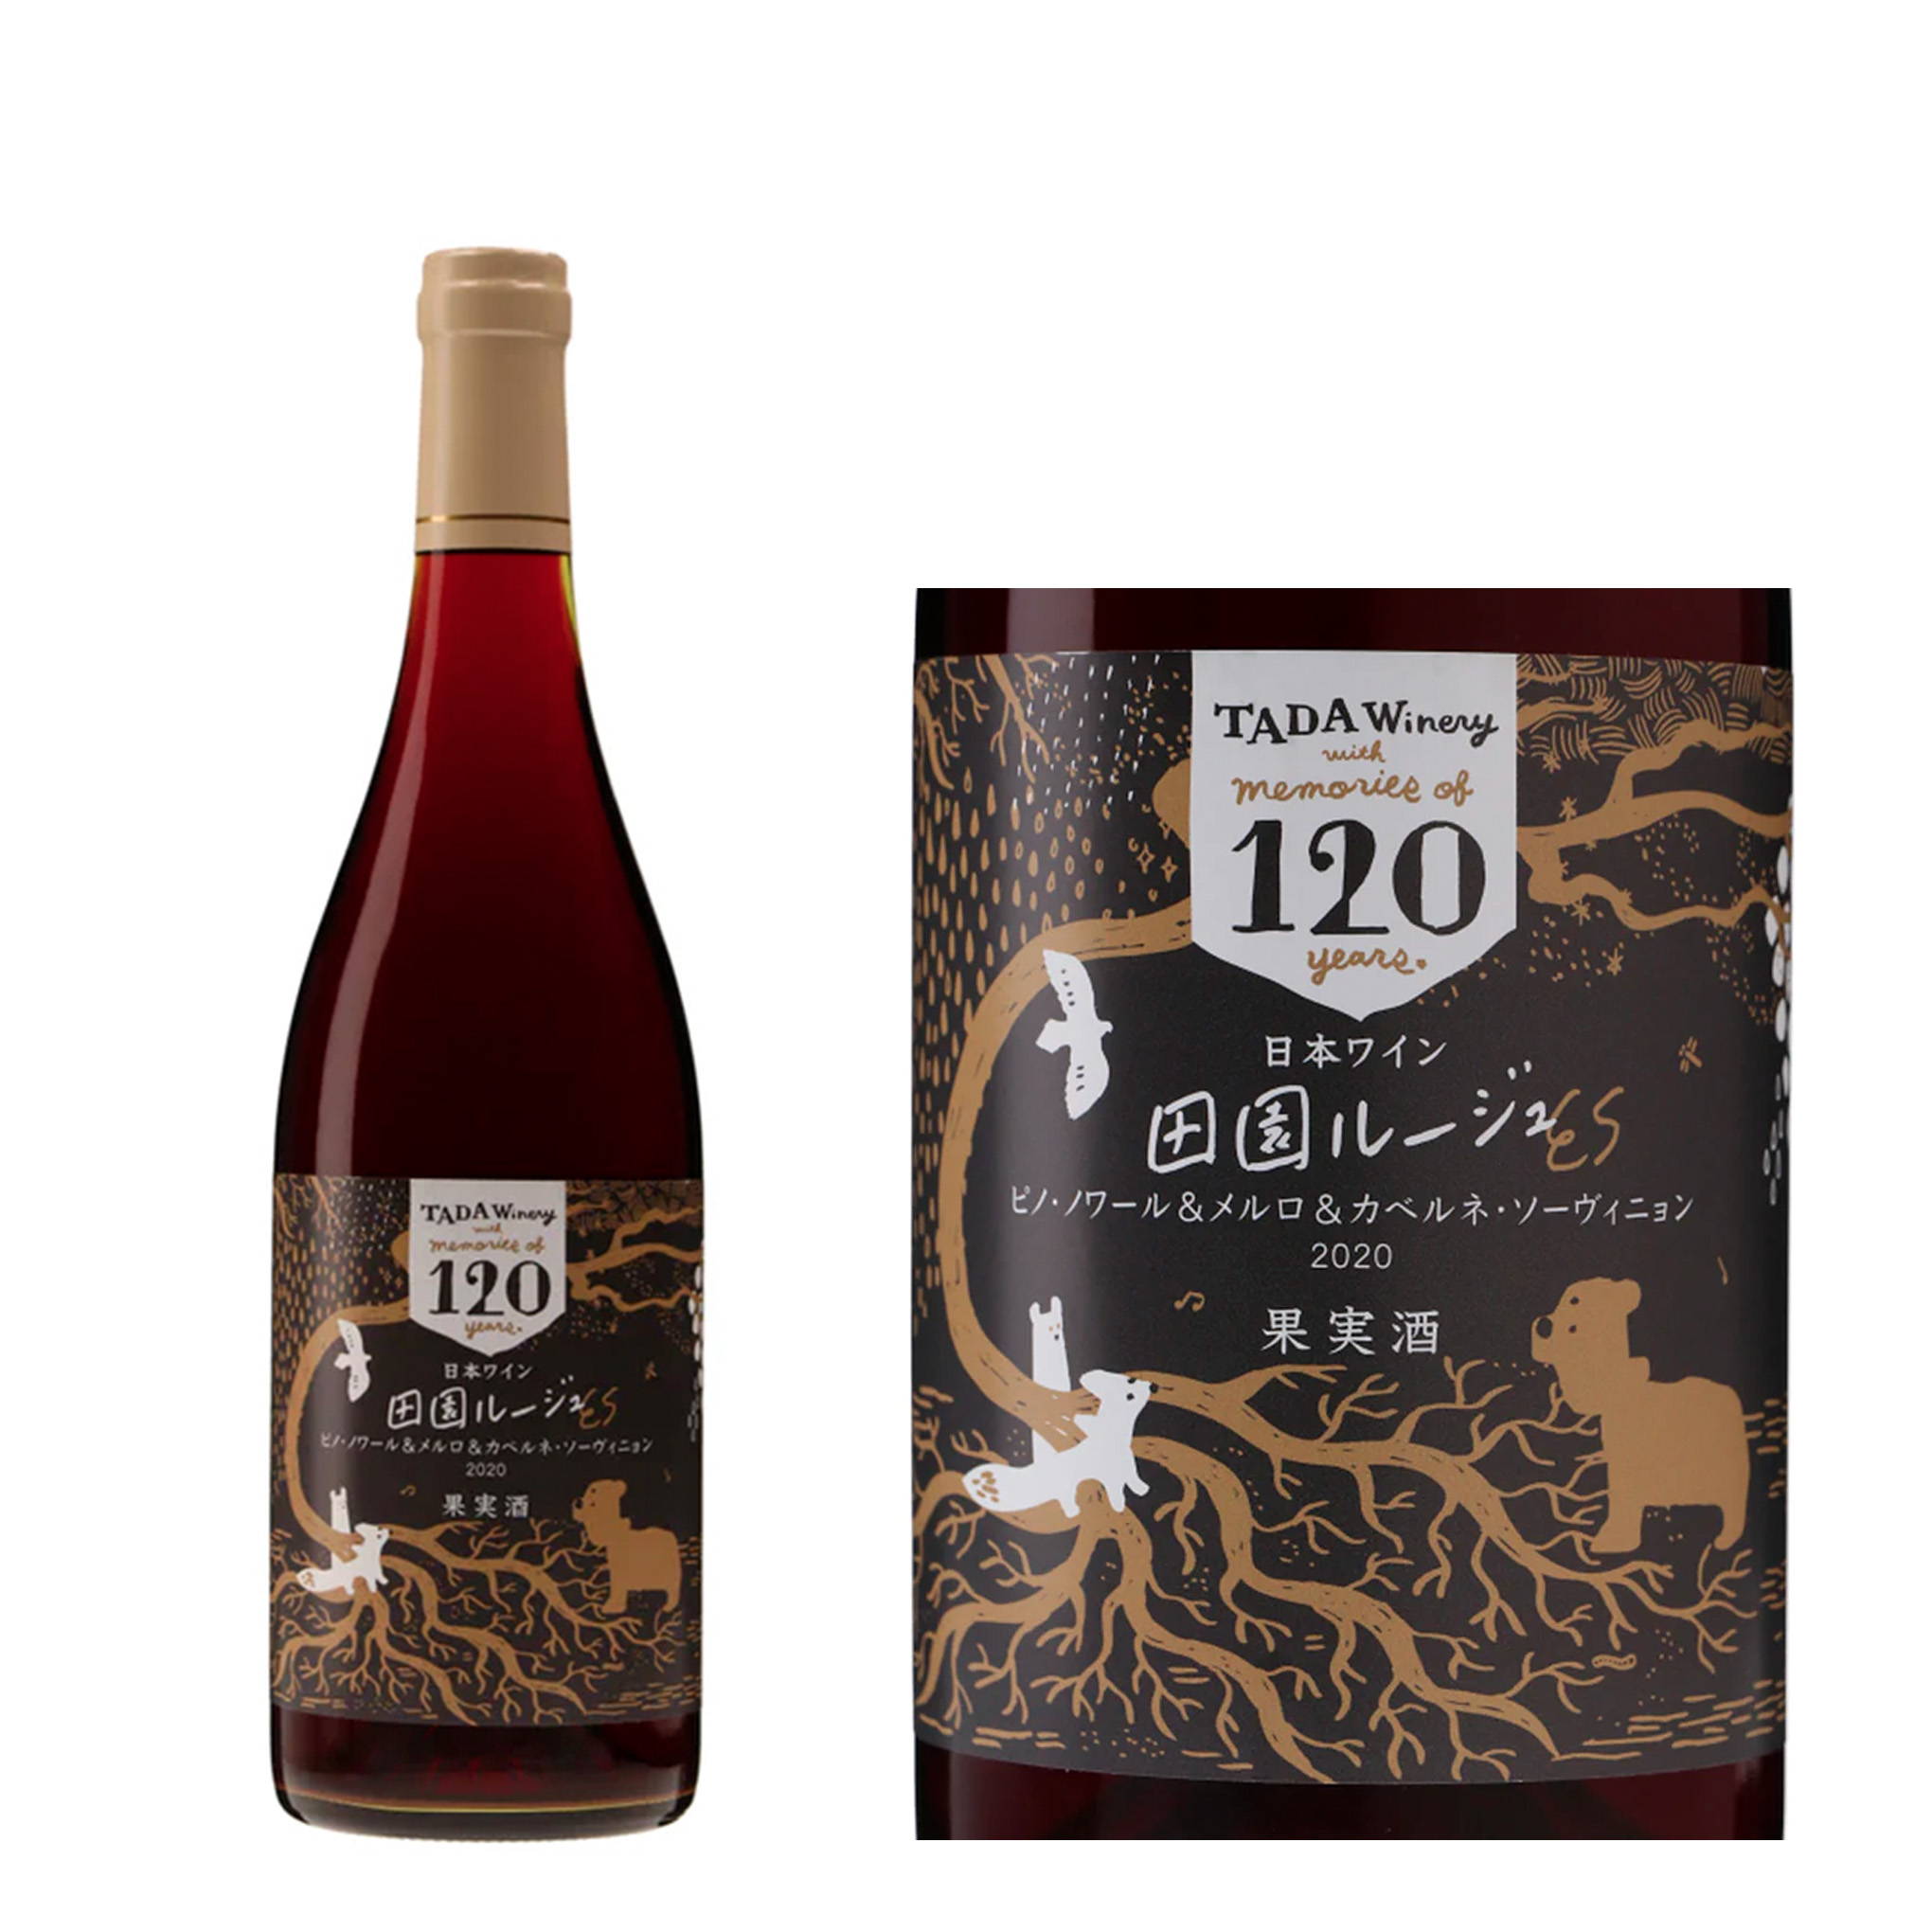 自社栽培のピノ・ノワール、メルロー、カベルネ・ソーヴィニヨンを野生酵母で発酵させてブレンド。『多田農園』120周年を記念した特別な赤ワイン。